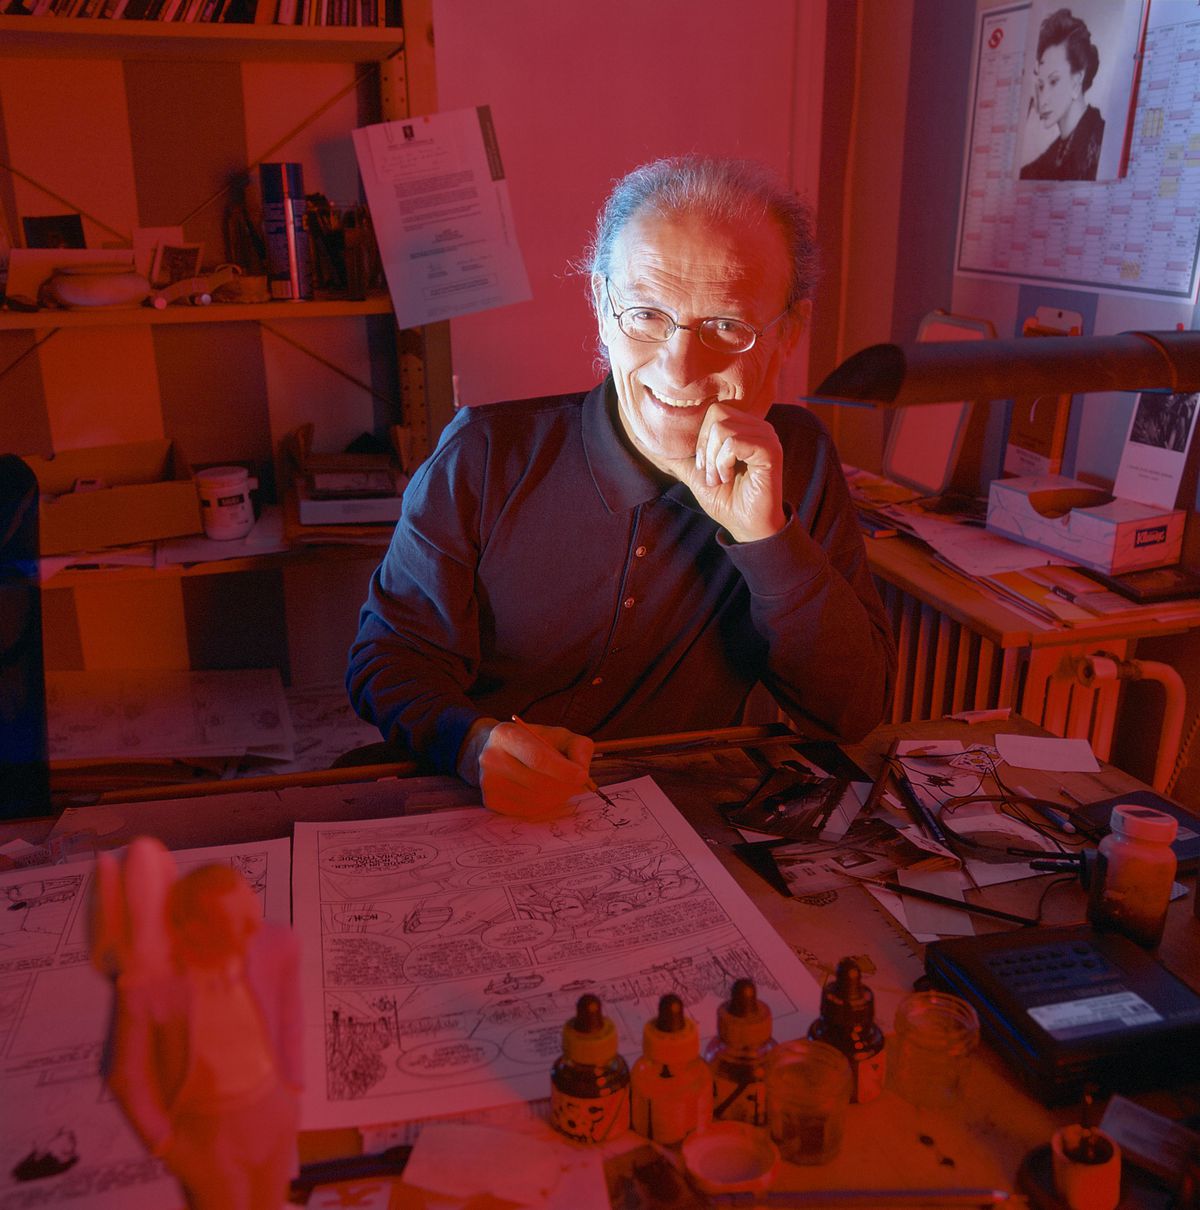 Jean Giraud posing in his studio